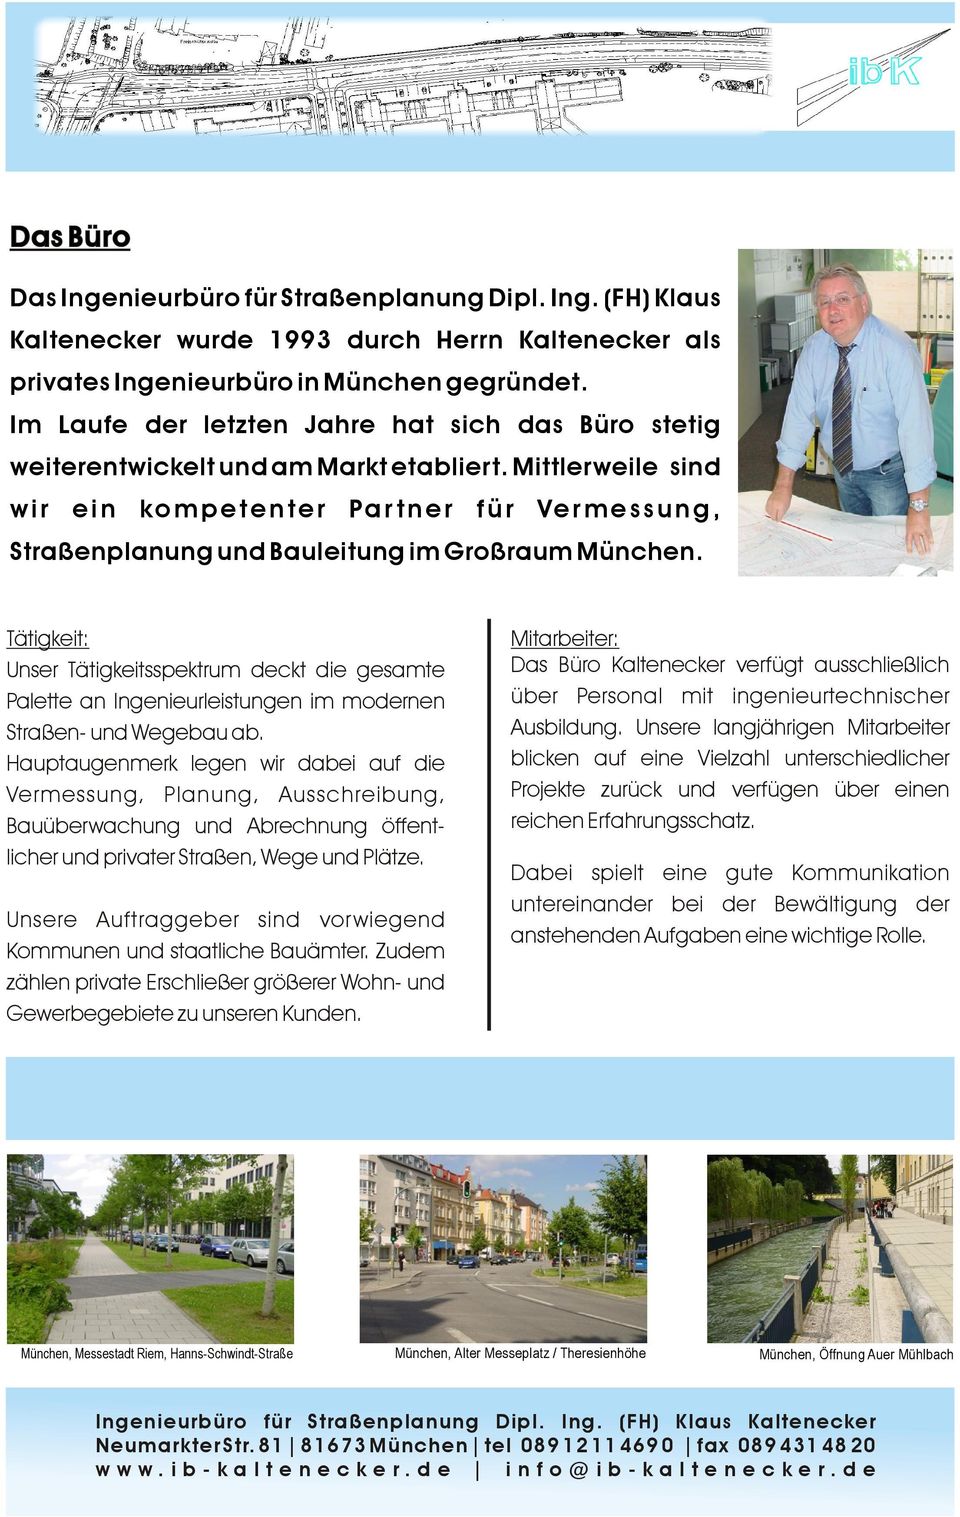 Mittlerweile sind wir ein kompetenter Partner für Vermessung, Straßenplanung und Bauleitung im Großraum München.